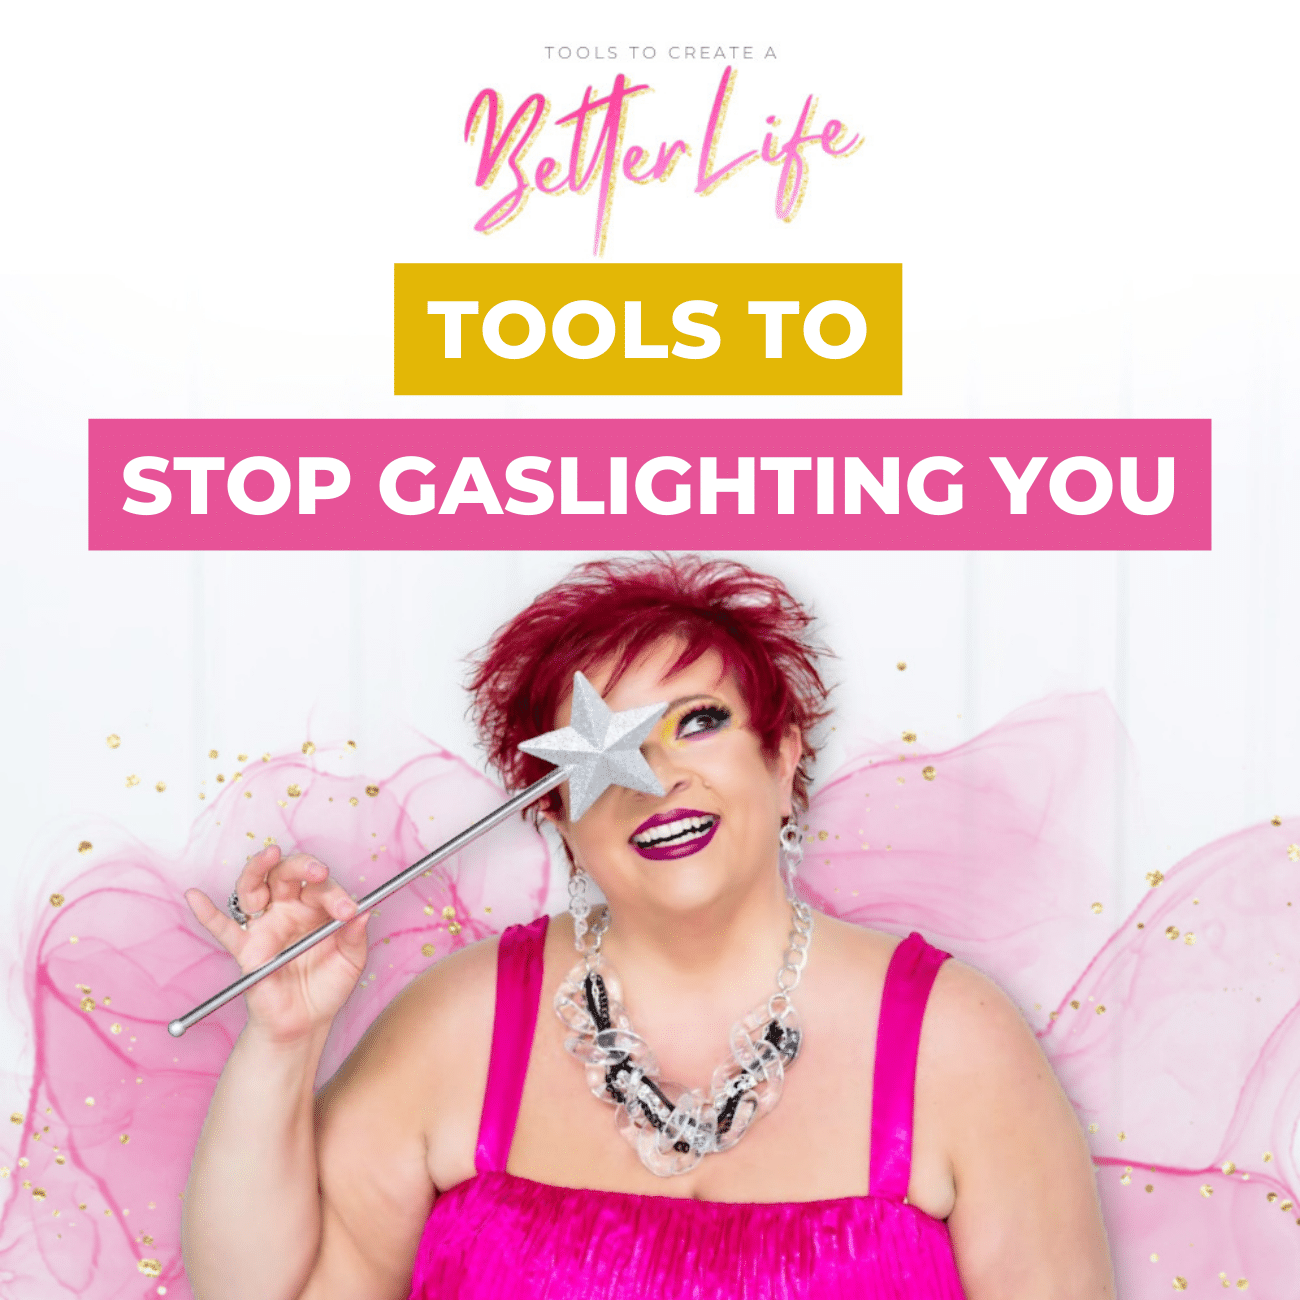 Tools to Stop Gaslighting YOU